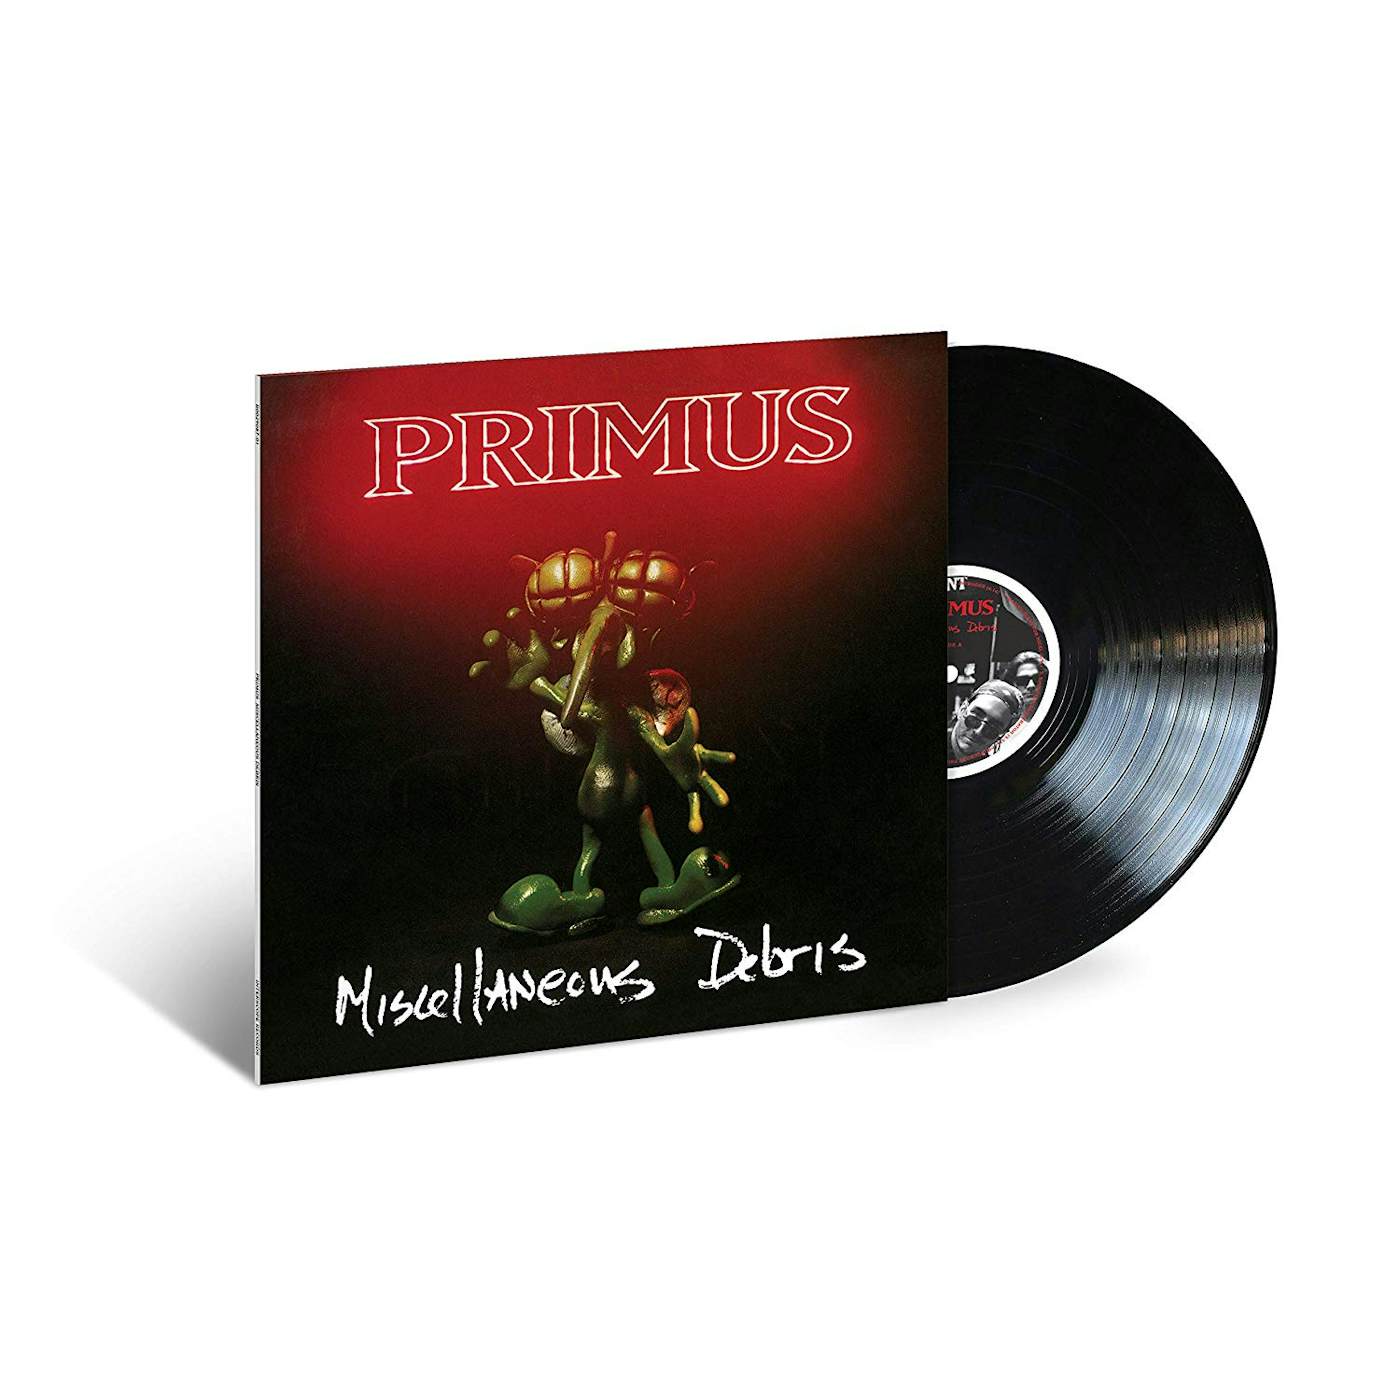 Primus Miscellaneous Debris Vinyl Record